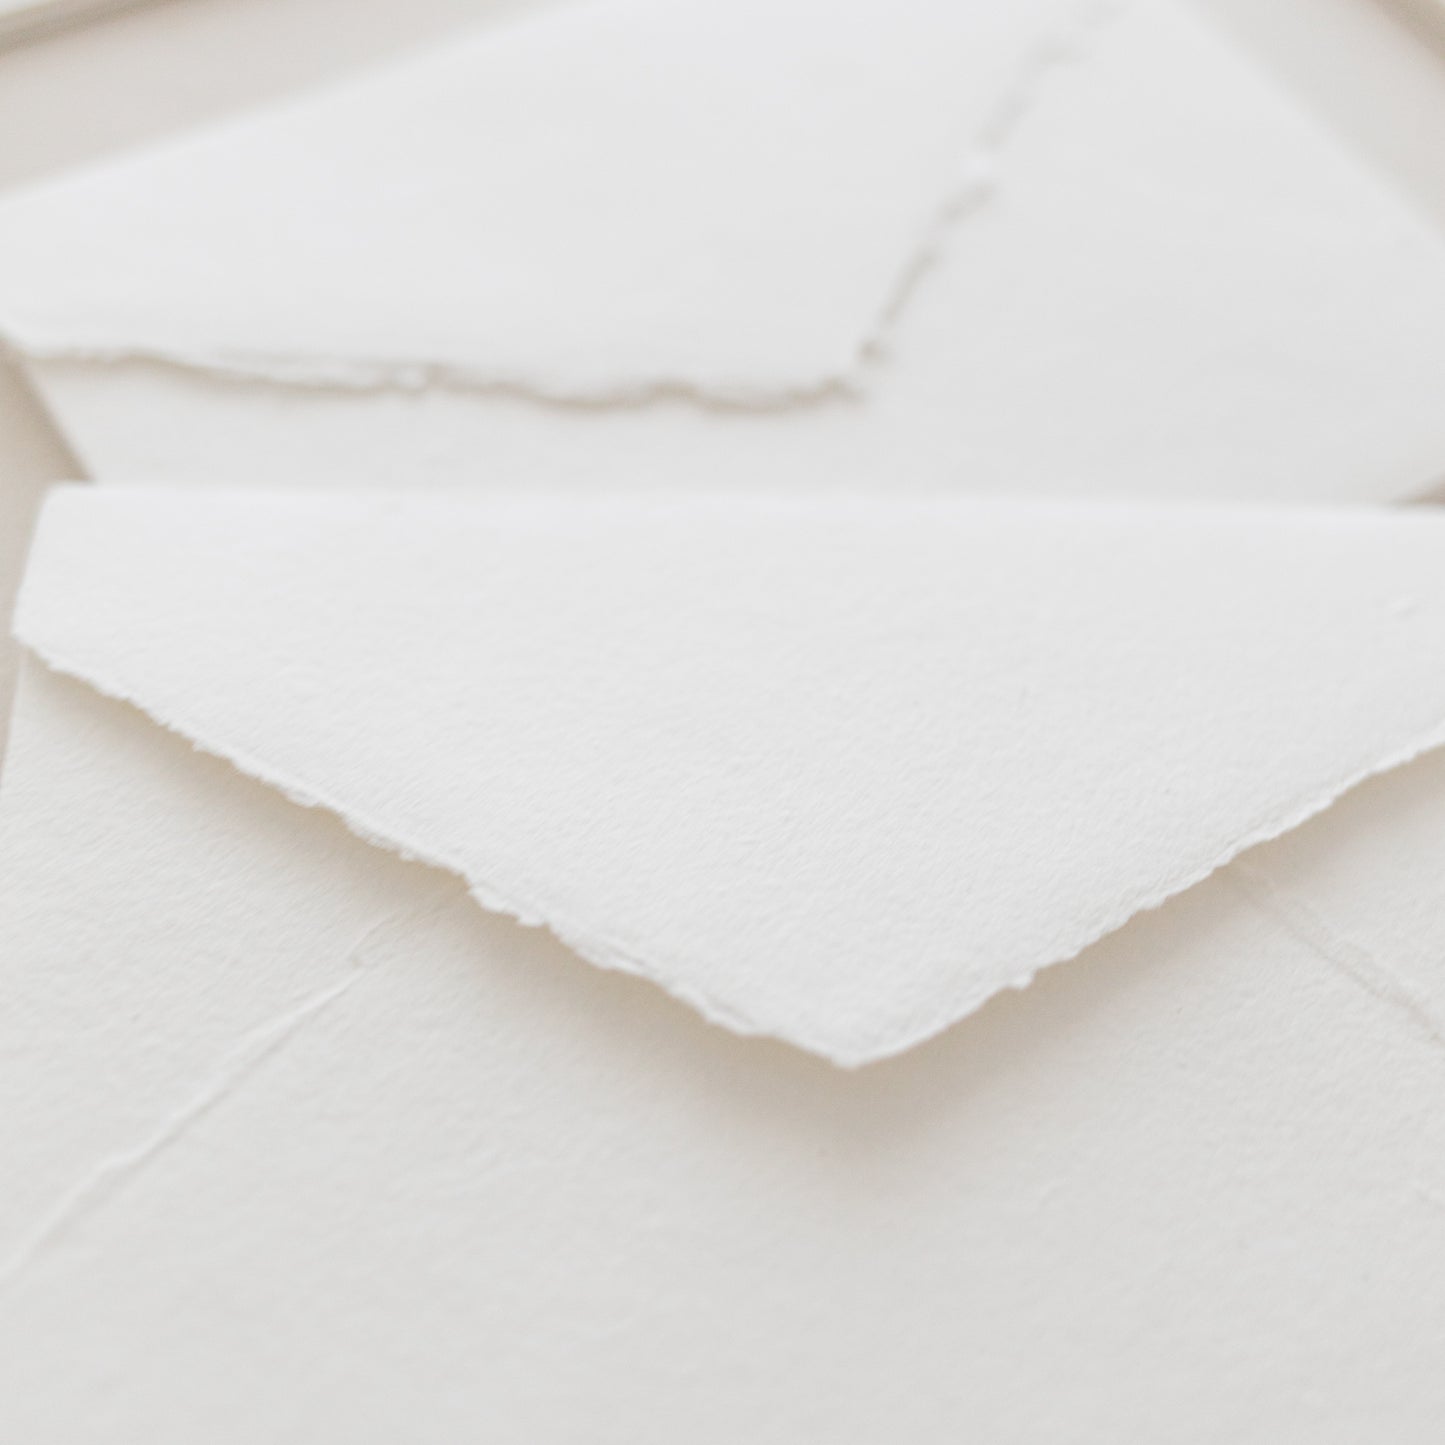 C6 – White Handmade Paper Envelopes